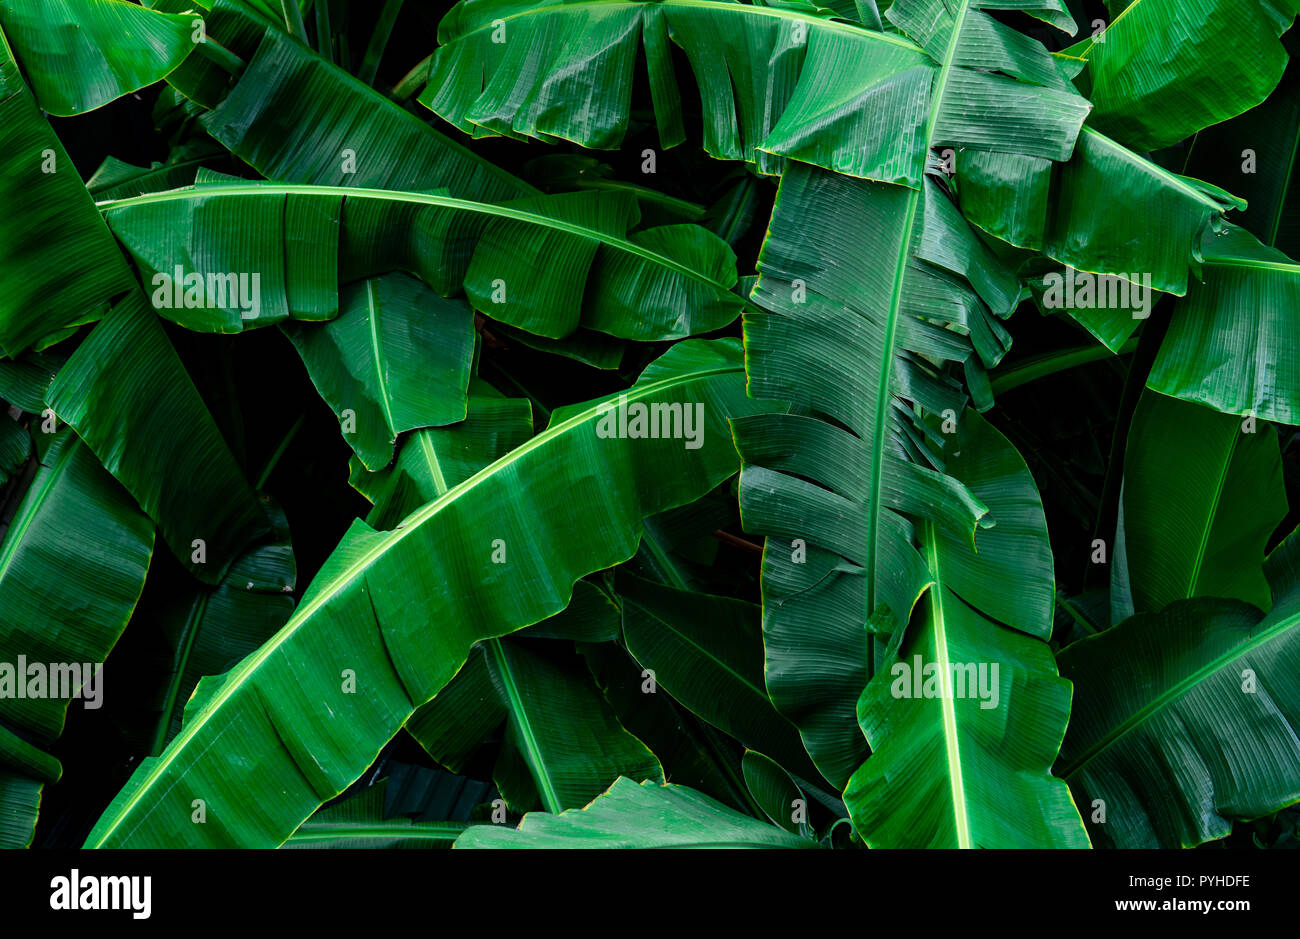 Banane grüne Blätter Textur Hintergrund. Banana leaf in tropischen Wald. Grüne Blätter mit schönen Muster in tropischen Dschungel. Natürliche Anlage im Tropi Stockfoto